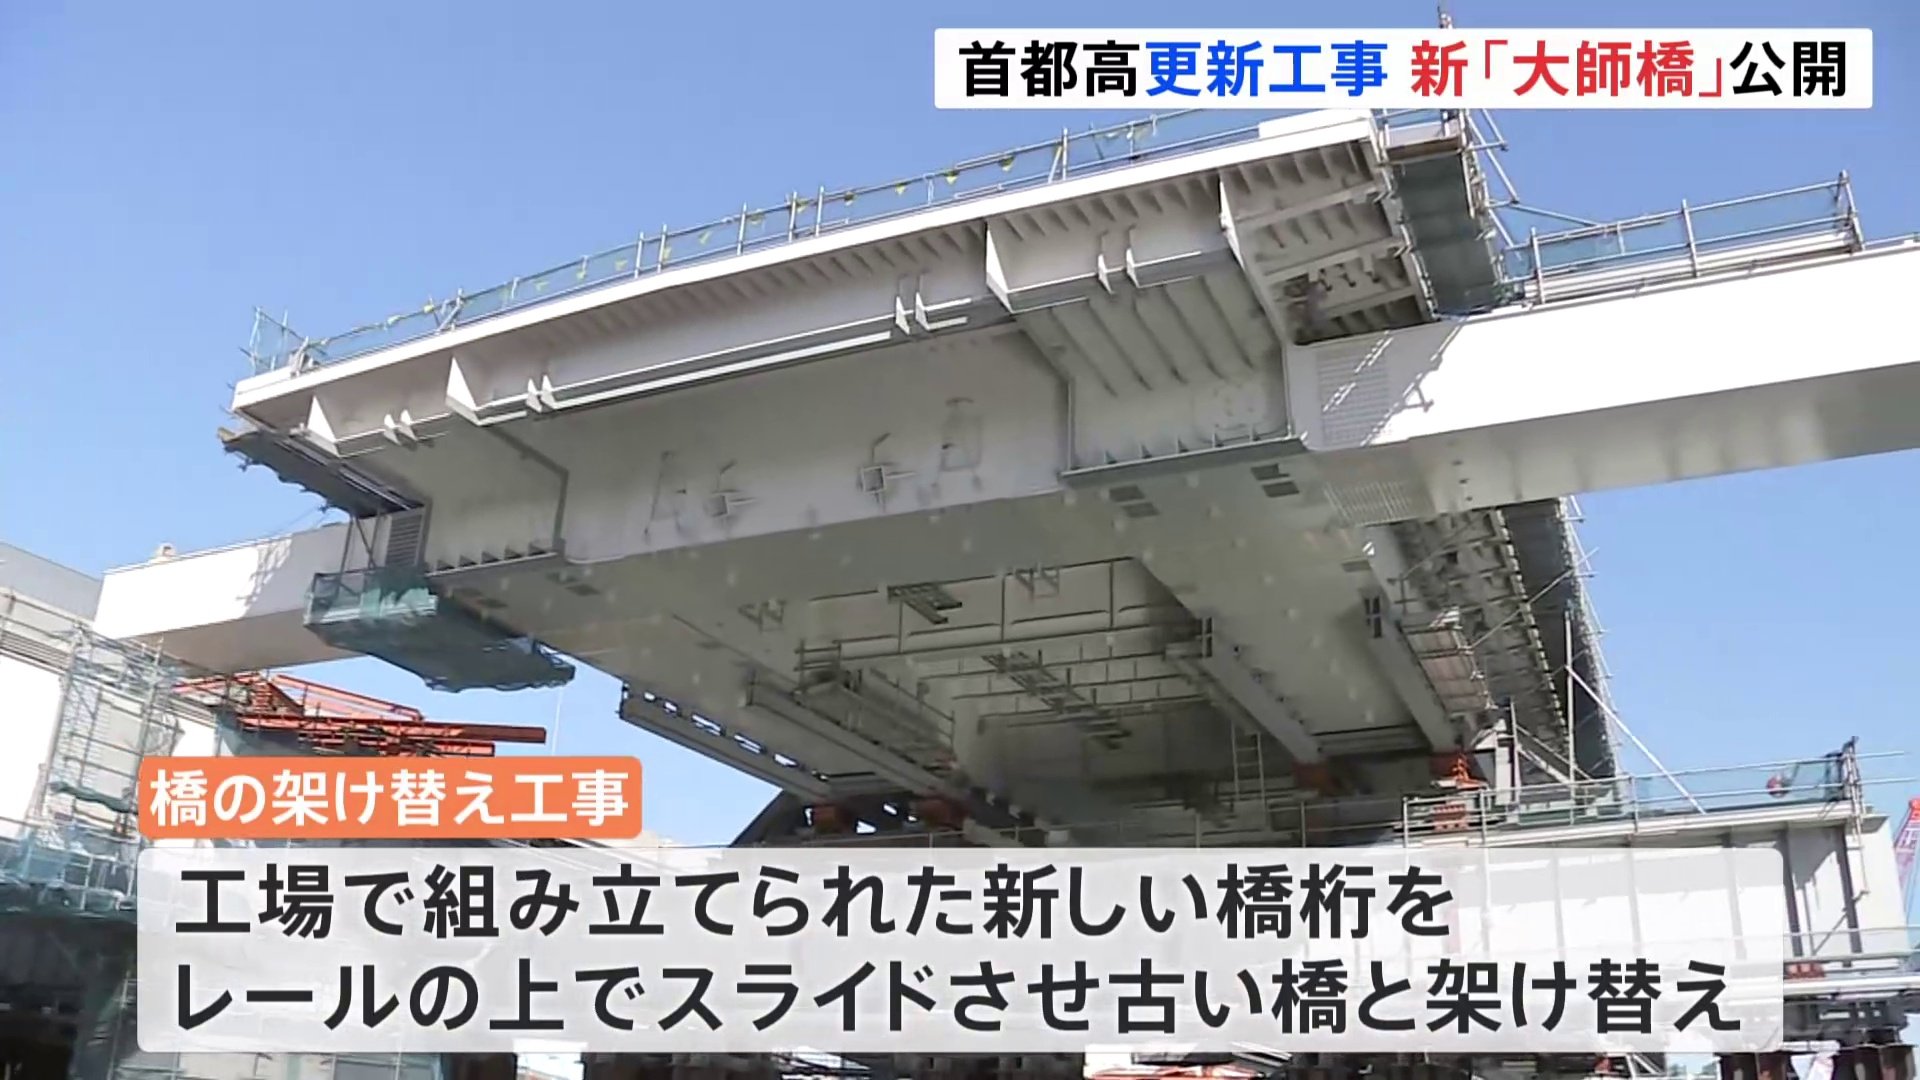 東京と神奈川を結ぶ首都高速道路「大師橋」架け替え工事の様子公開